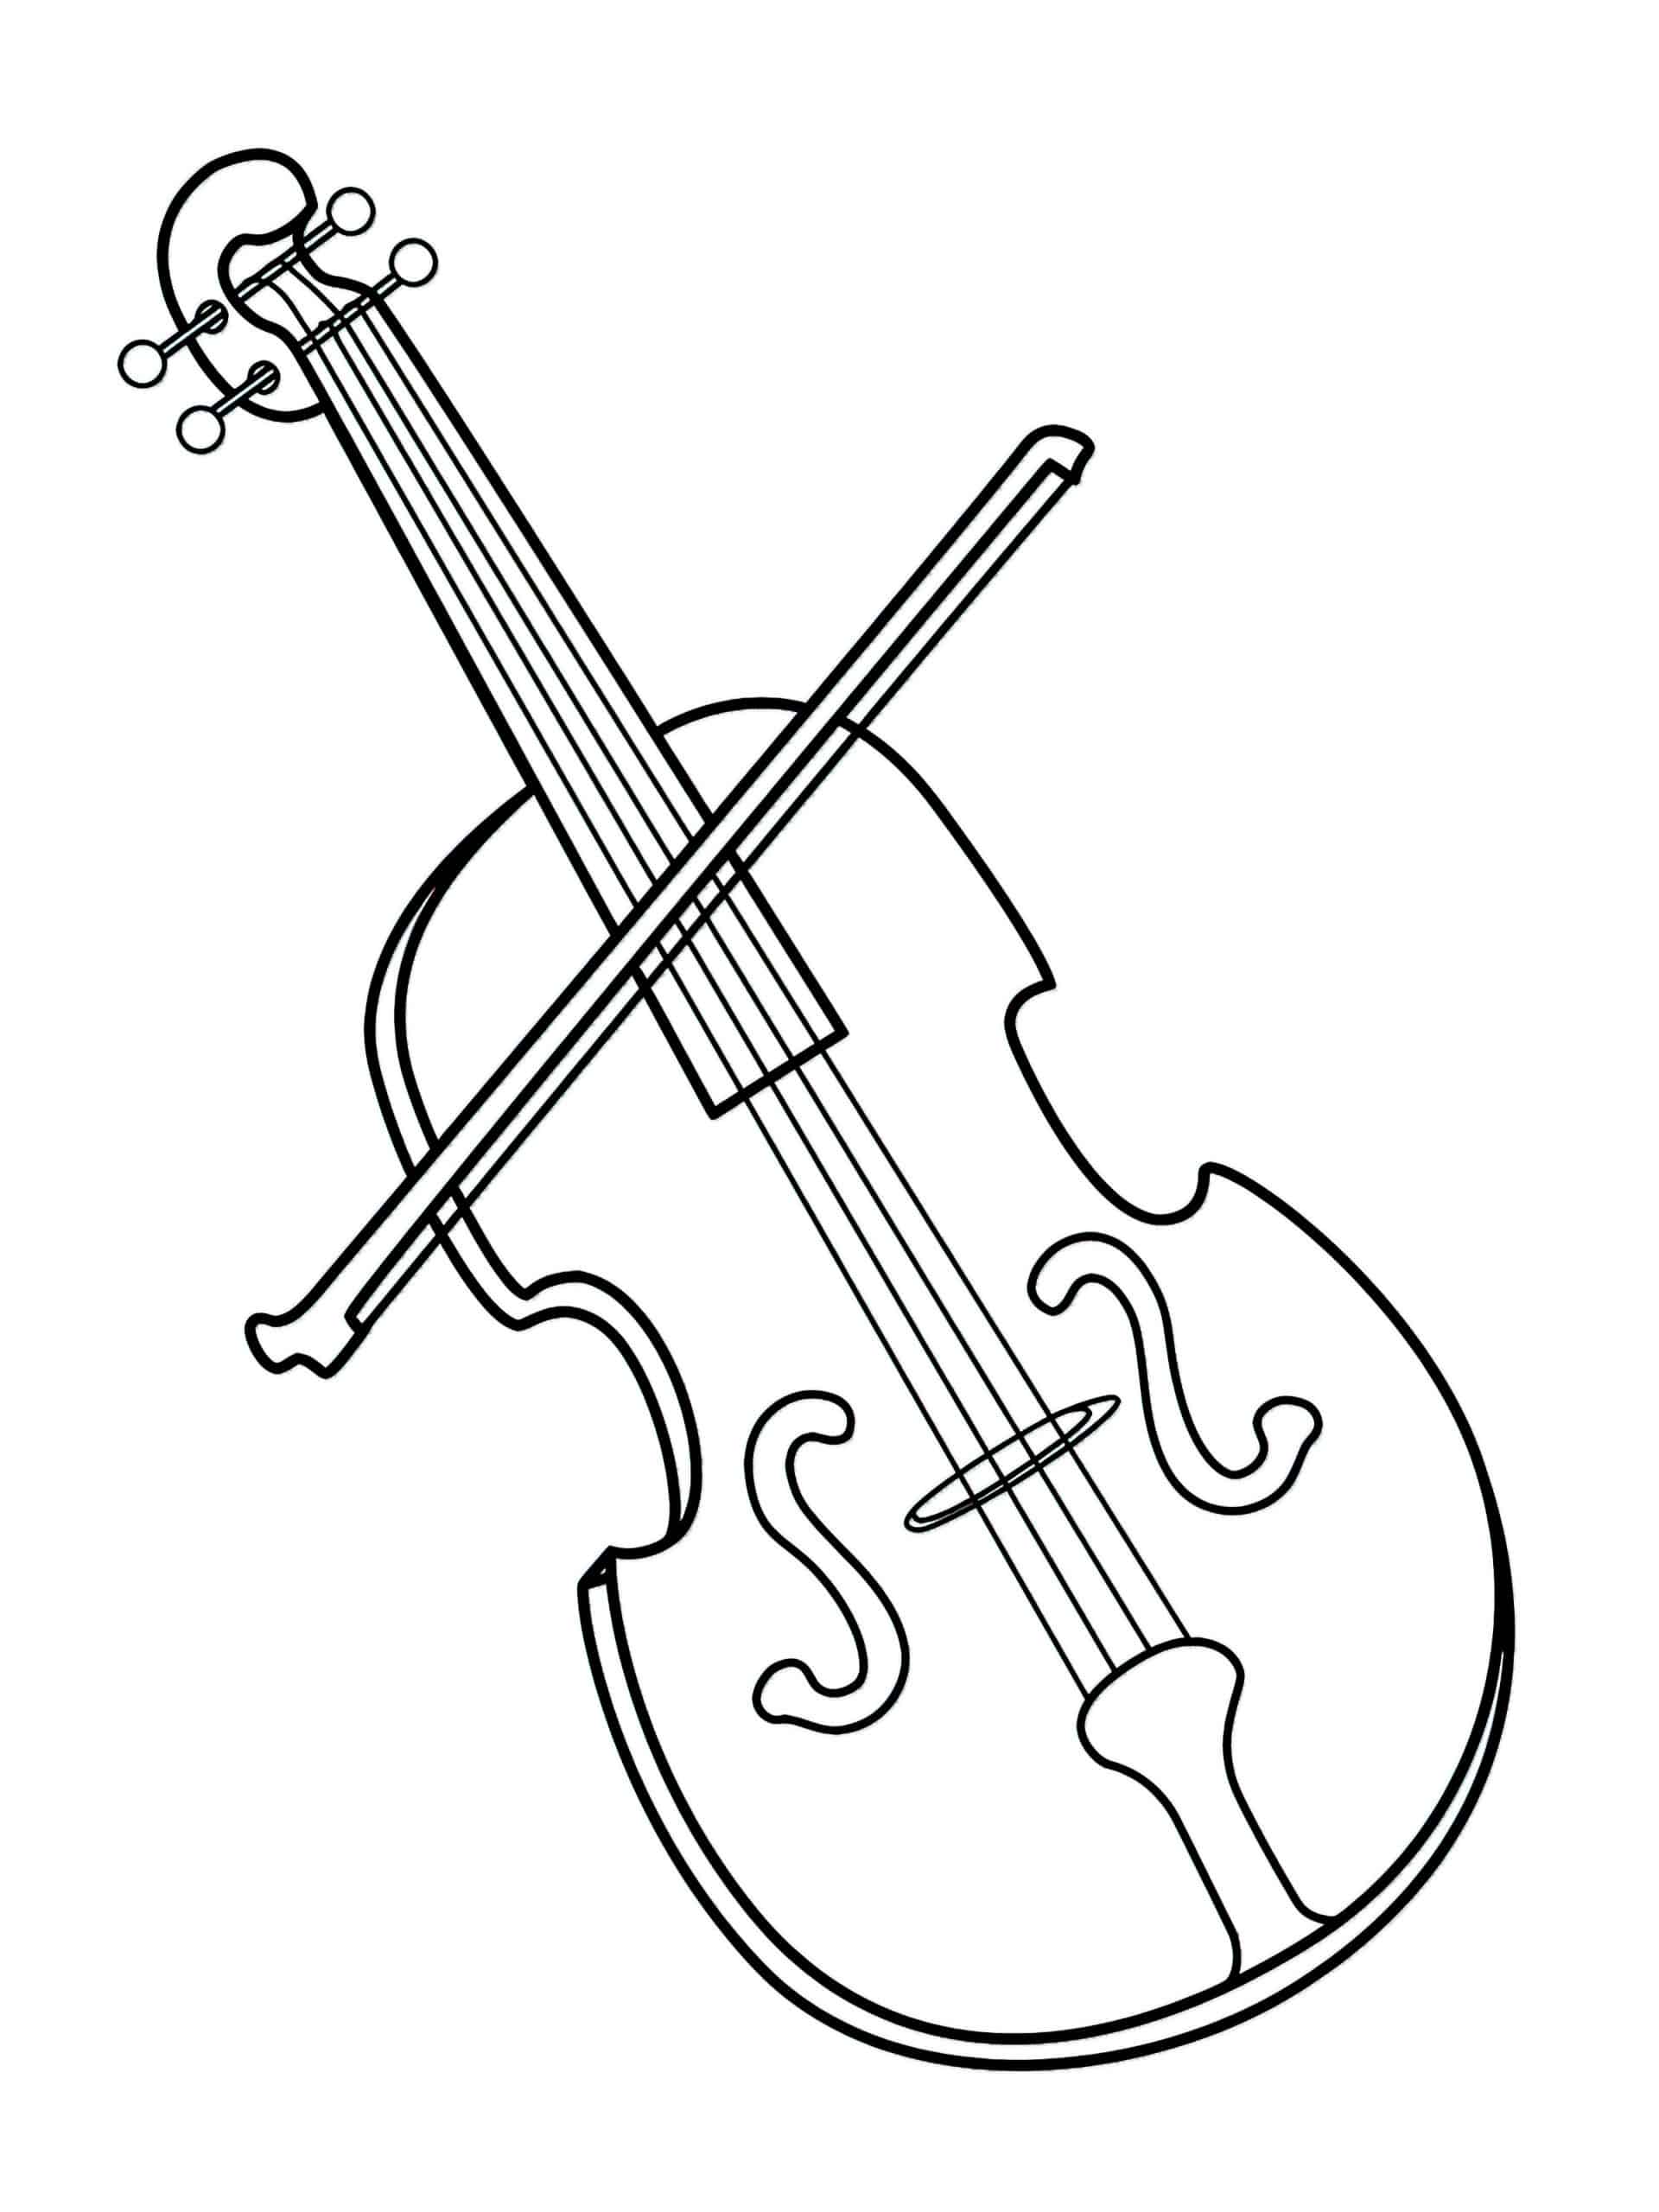 דף צביעה כינור